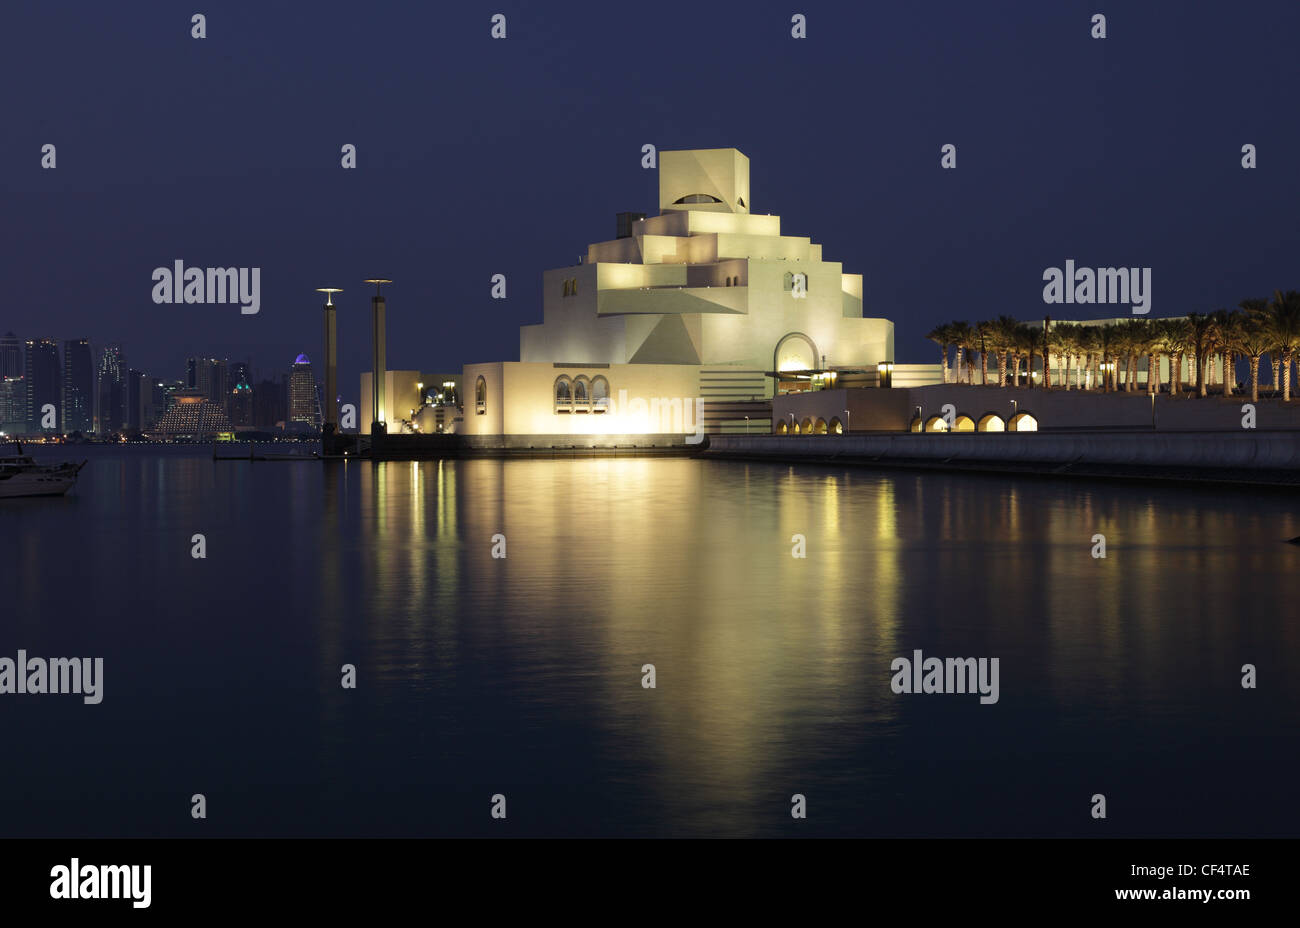 Museum für islamische Kunst in Doha, die nachts beleuchtet. Katar, Nahost Stockfoto